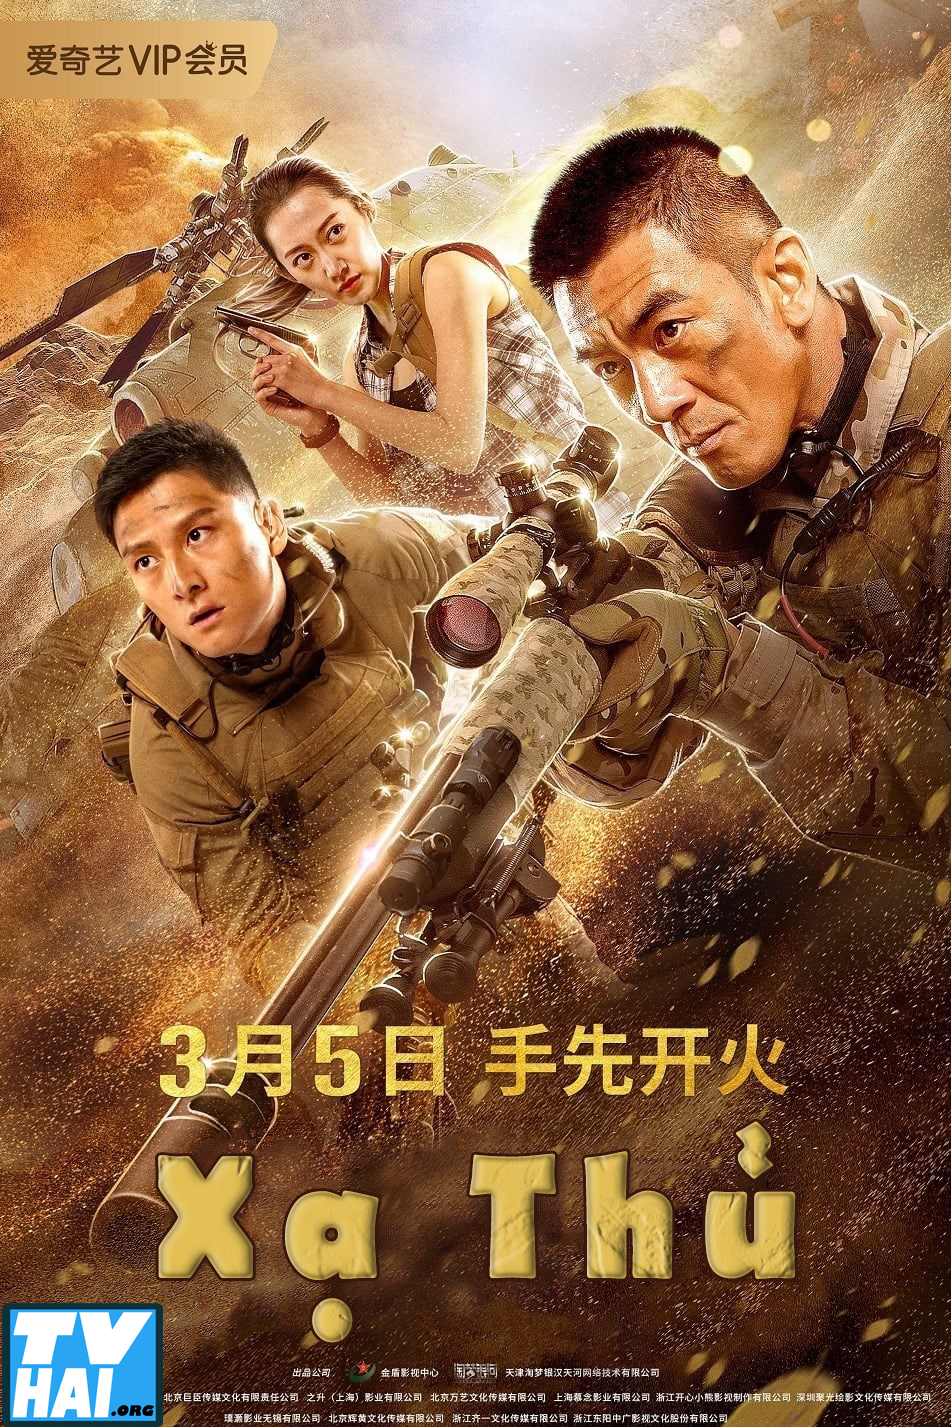 Poster Phim Xạ Thủ (Sniper 2020)